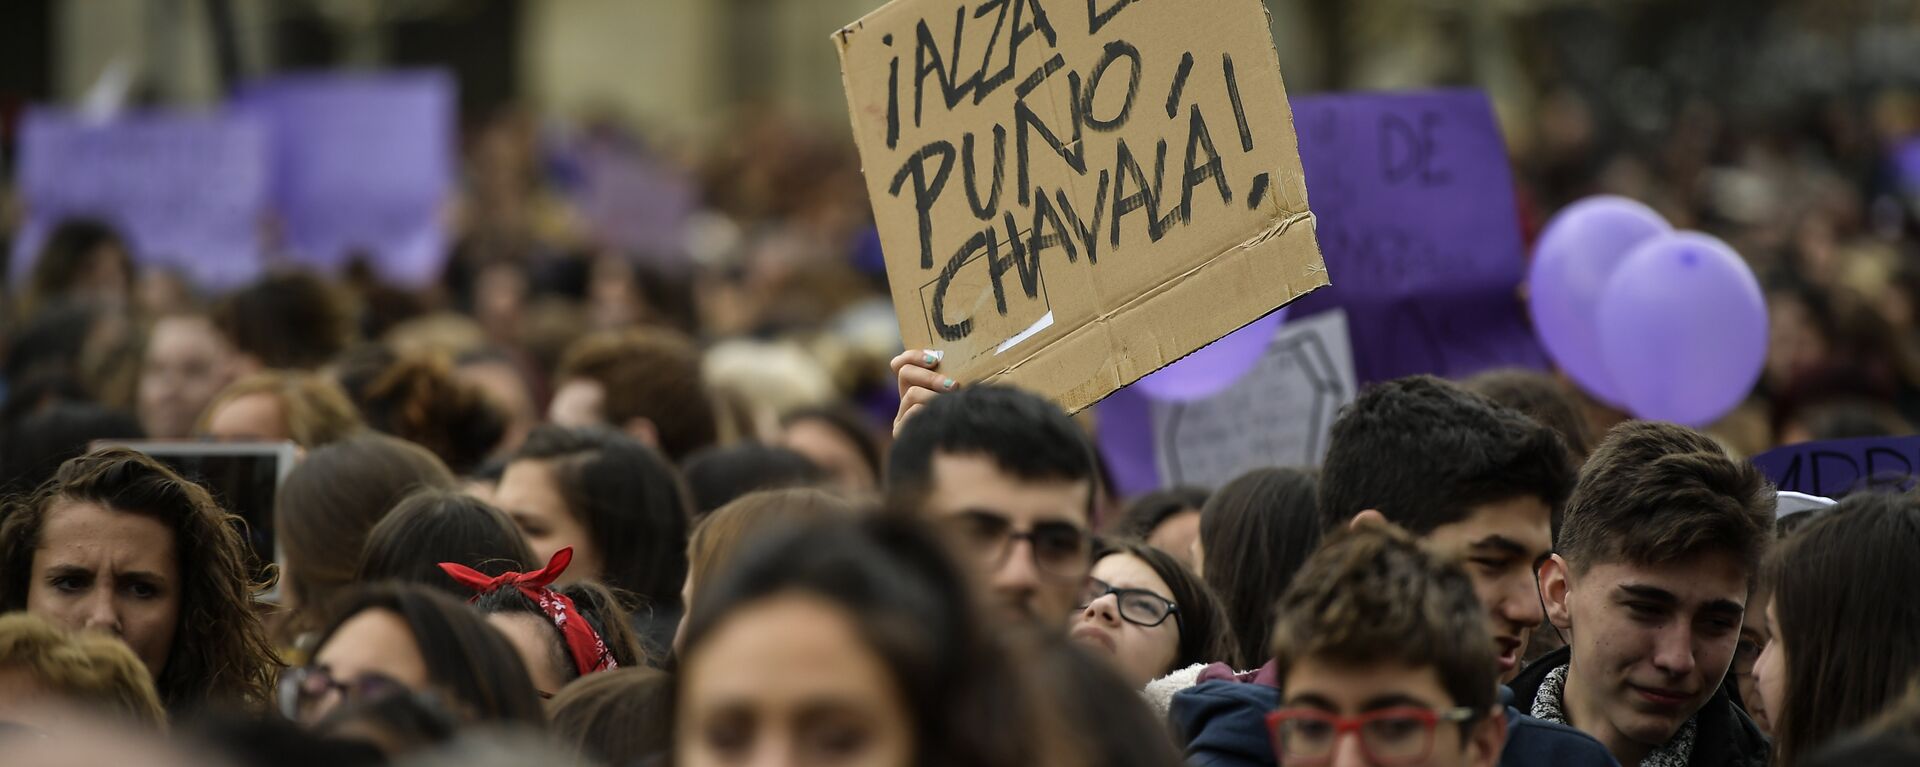 Marcha feminista del Día Internacional de la Mujer en España (archivo) - Sputnik Mundo, 1920, 04.03.2021